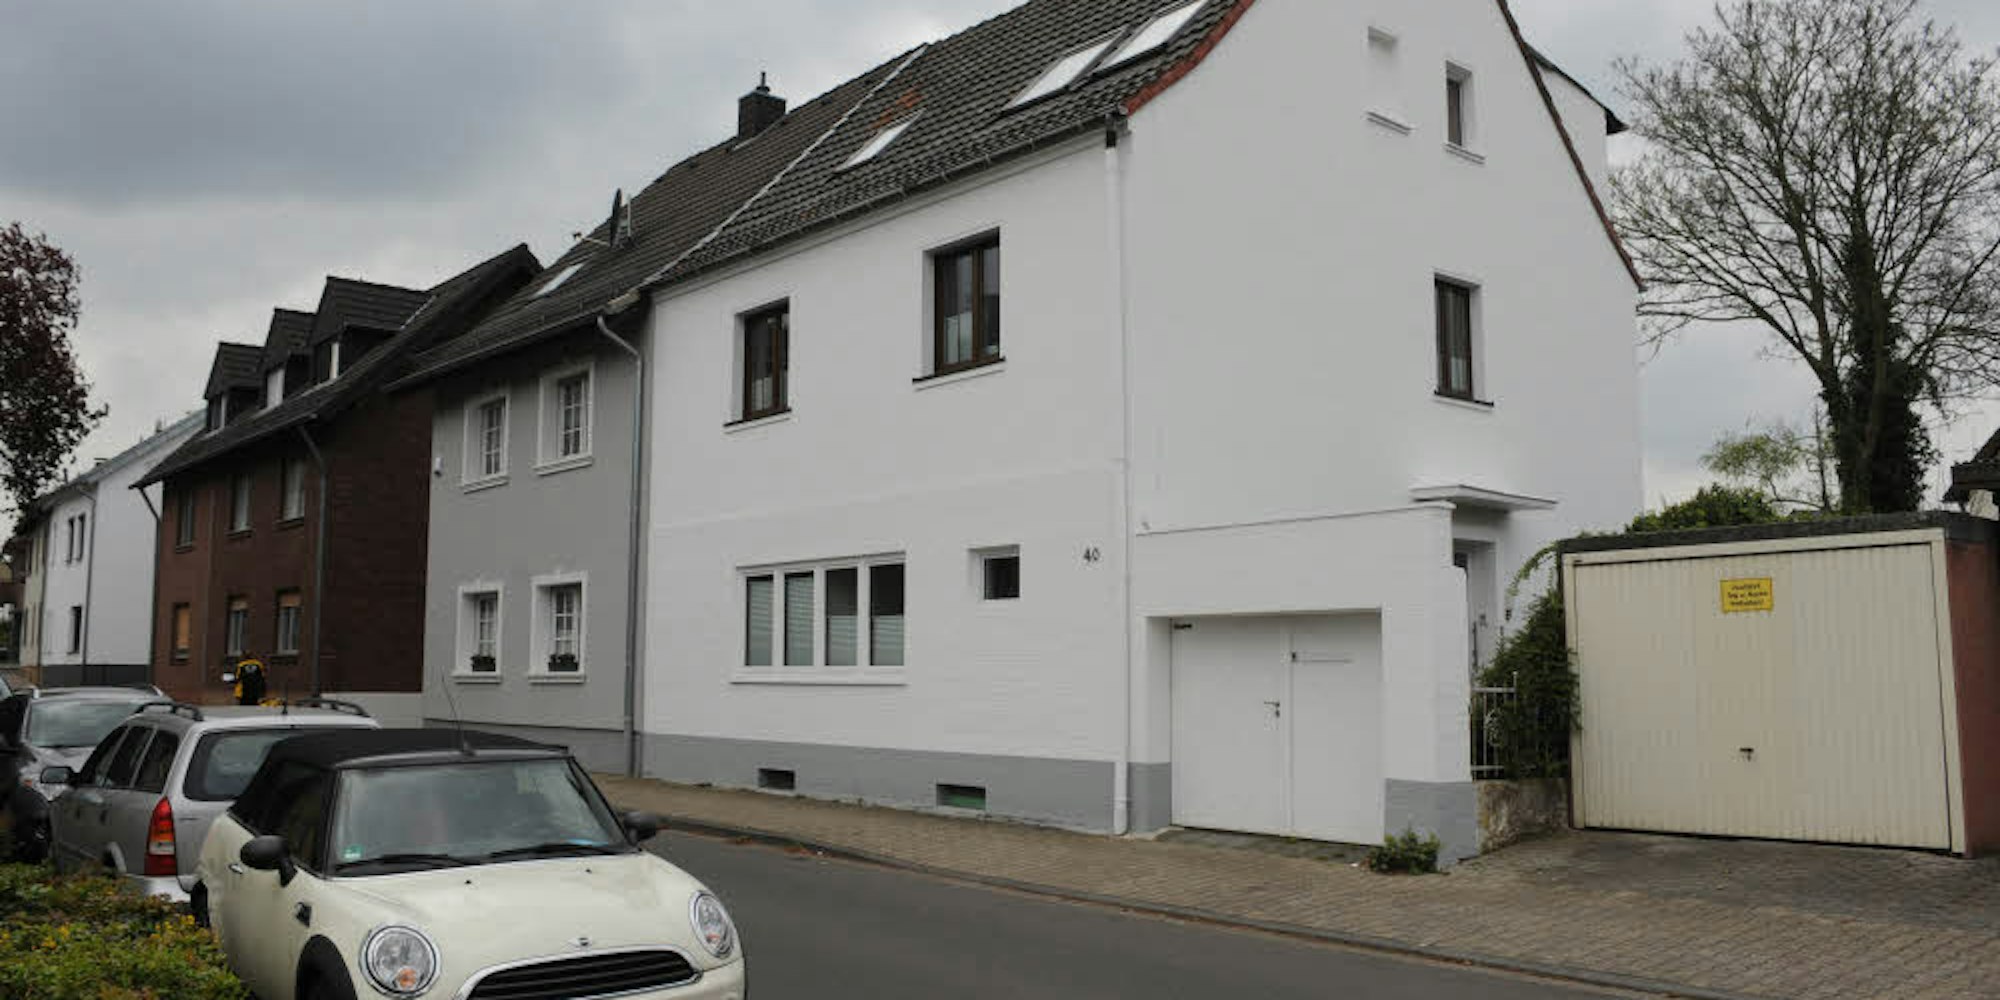 Fünf Flüchtlinge aus Eritrea und Afghanistan wollen in Kürze in dieses Haus in Badorf einziehen.